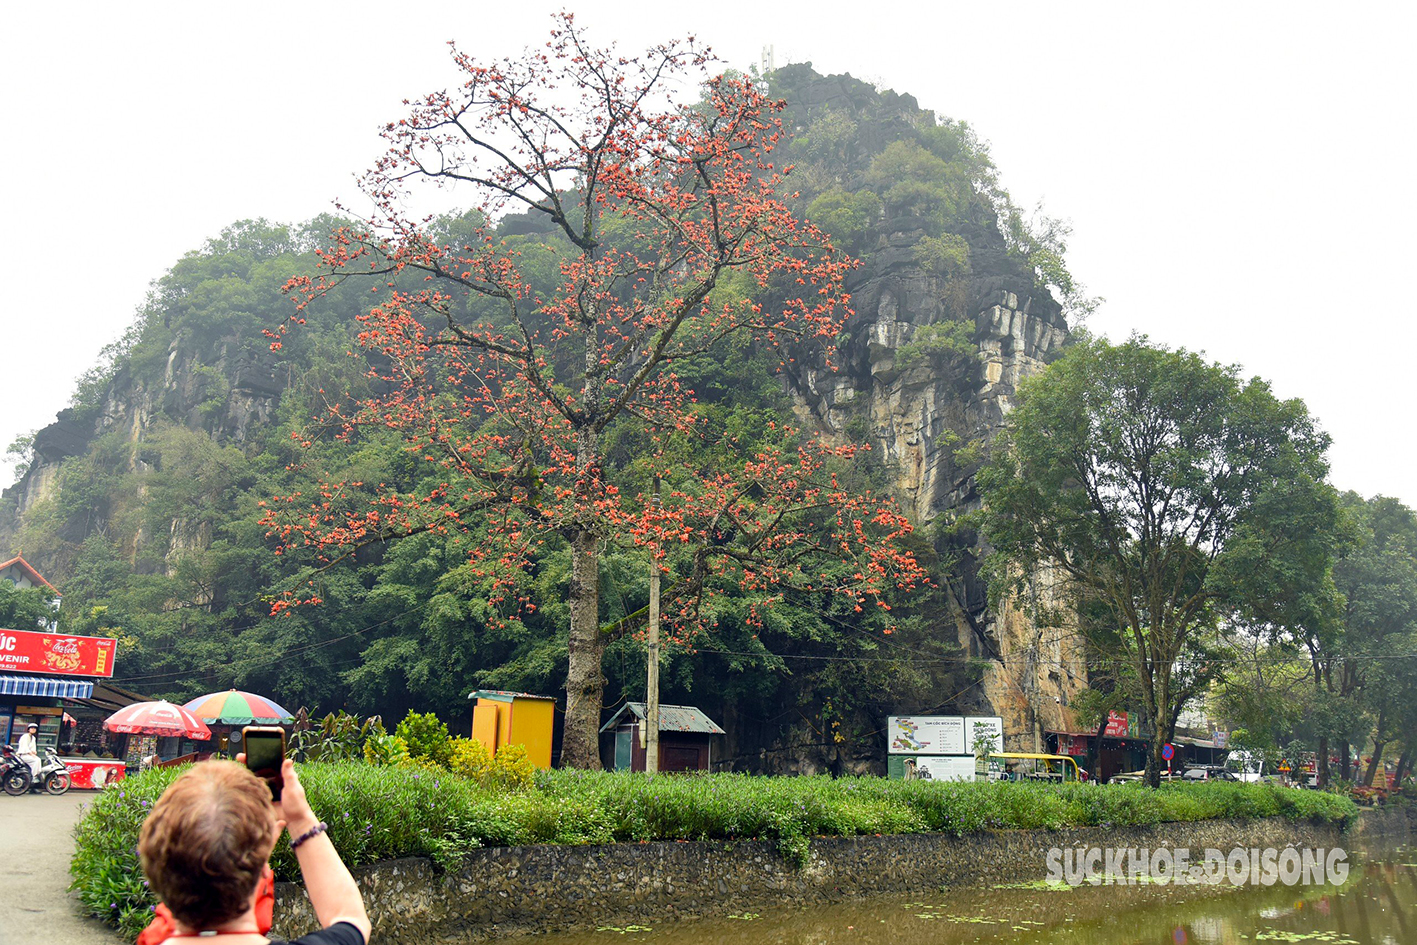 Mê mẩn sắc đỏ của cây gạo trăm tuổi bên mái chùa rêu phong ở Ninh Bình- Ảnh 5.